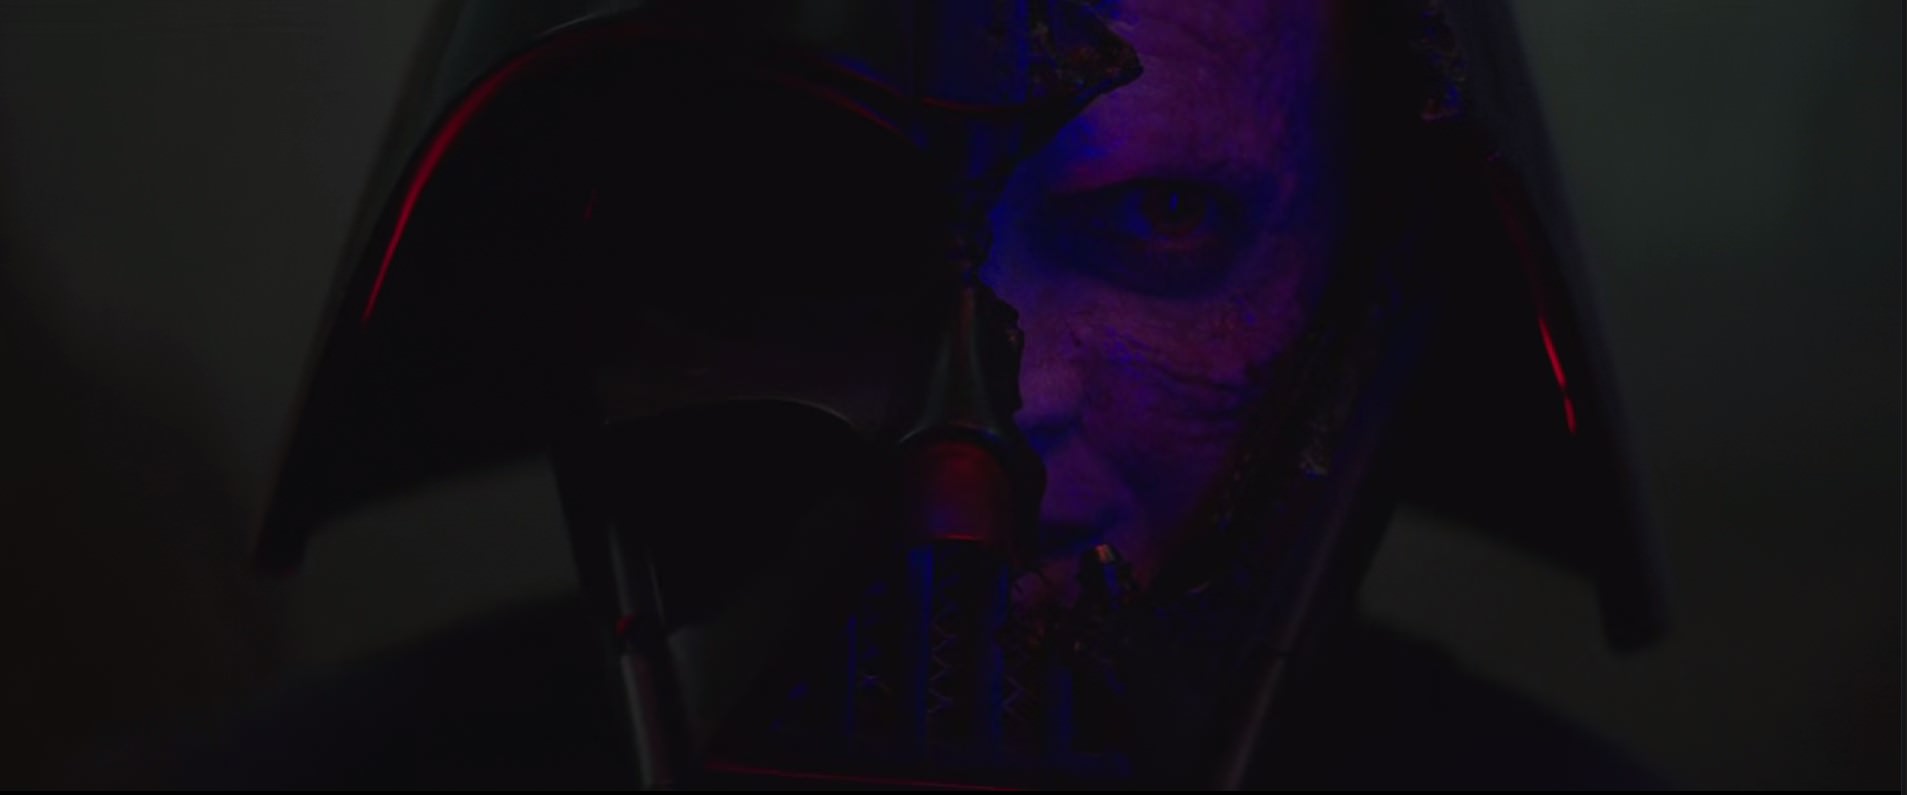 پدیدار شدن صورت آناکین از پشت ماسک دارث ویدر در سریال Obi-Wan Kenobi